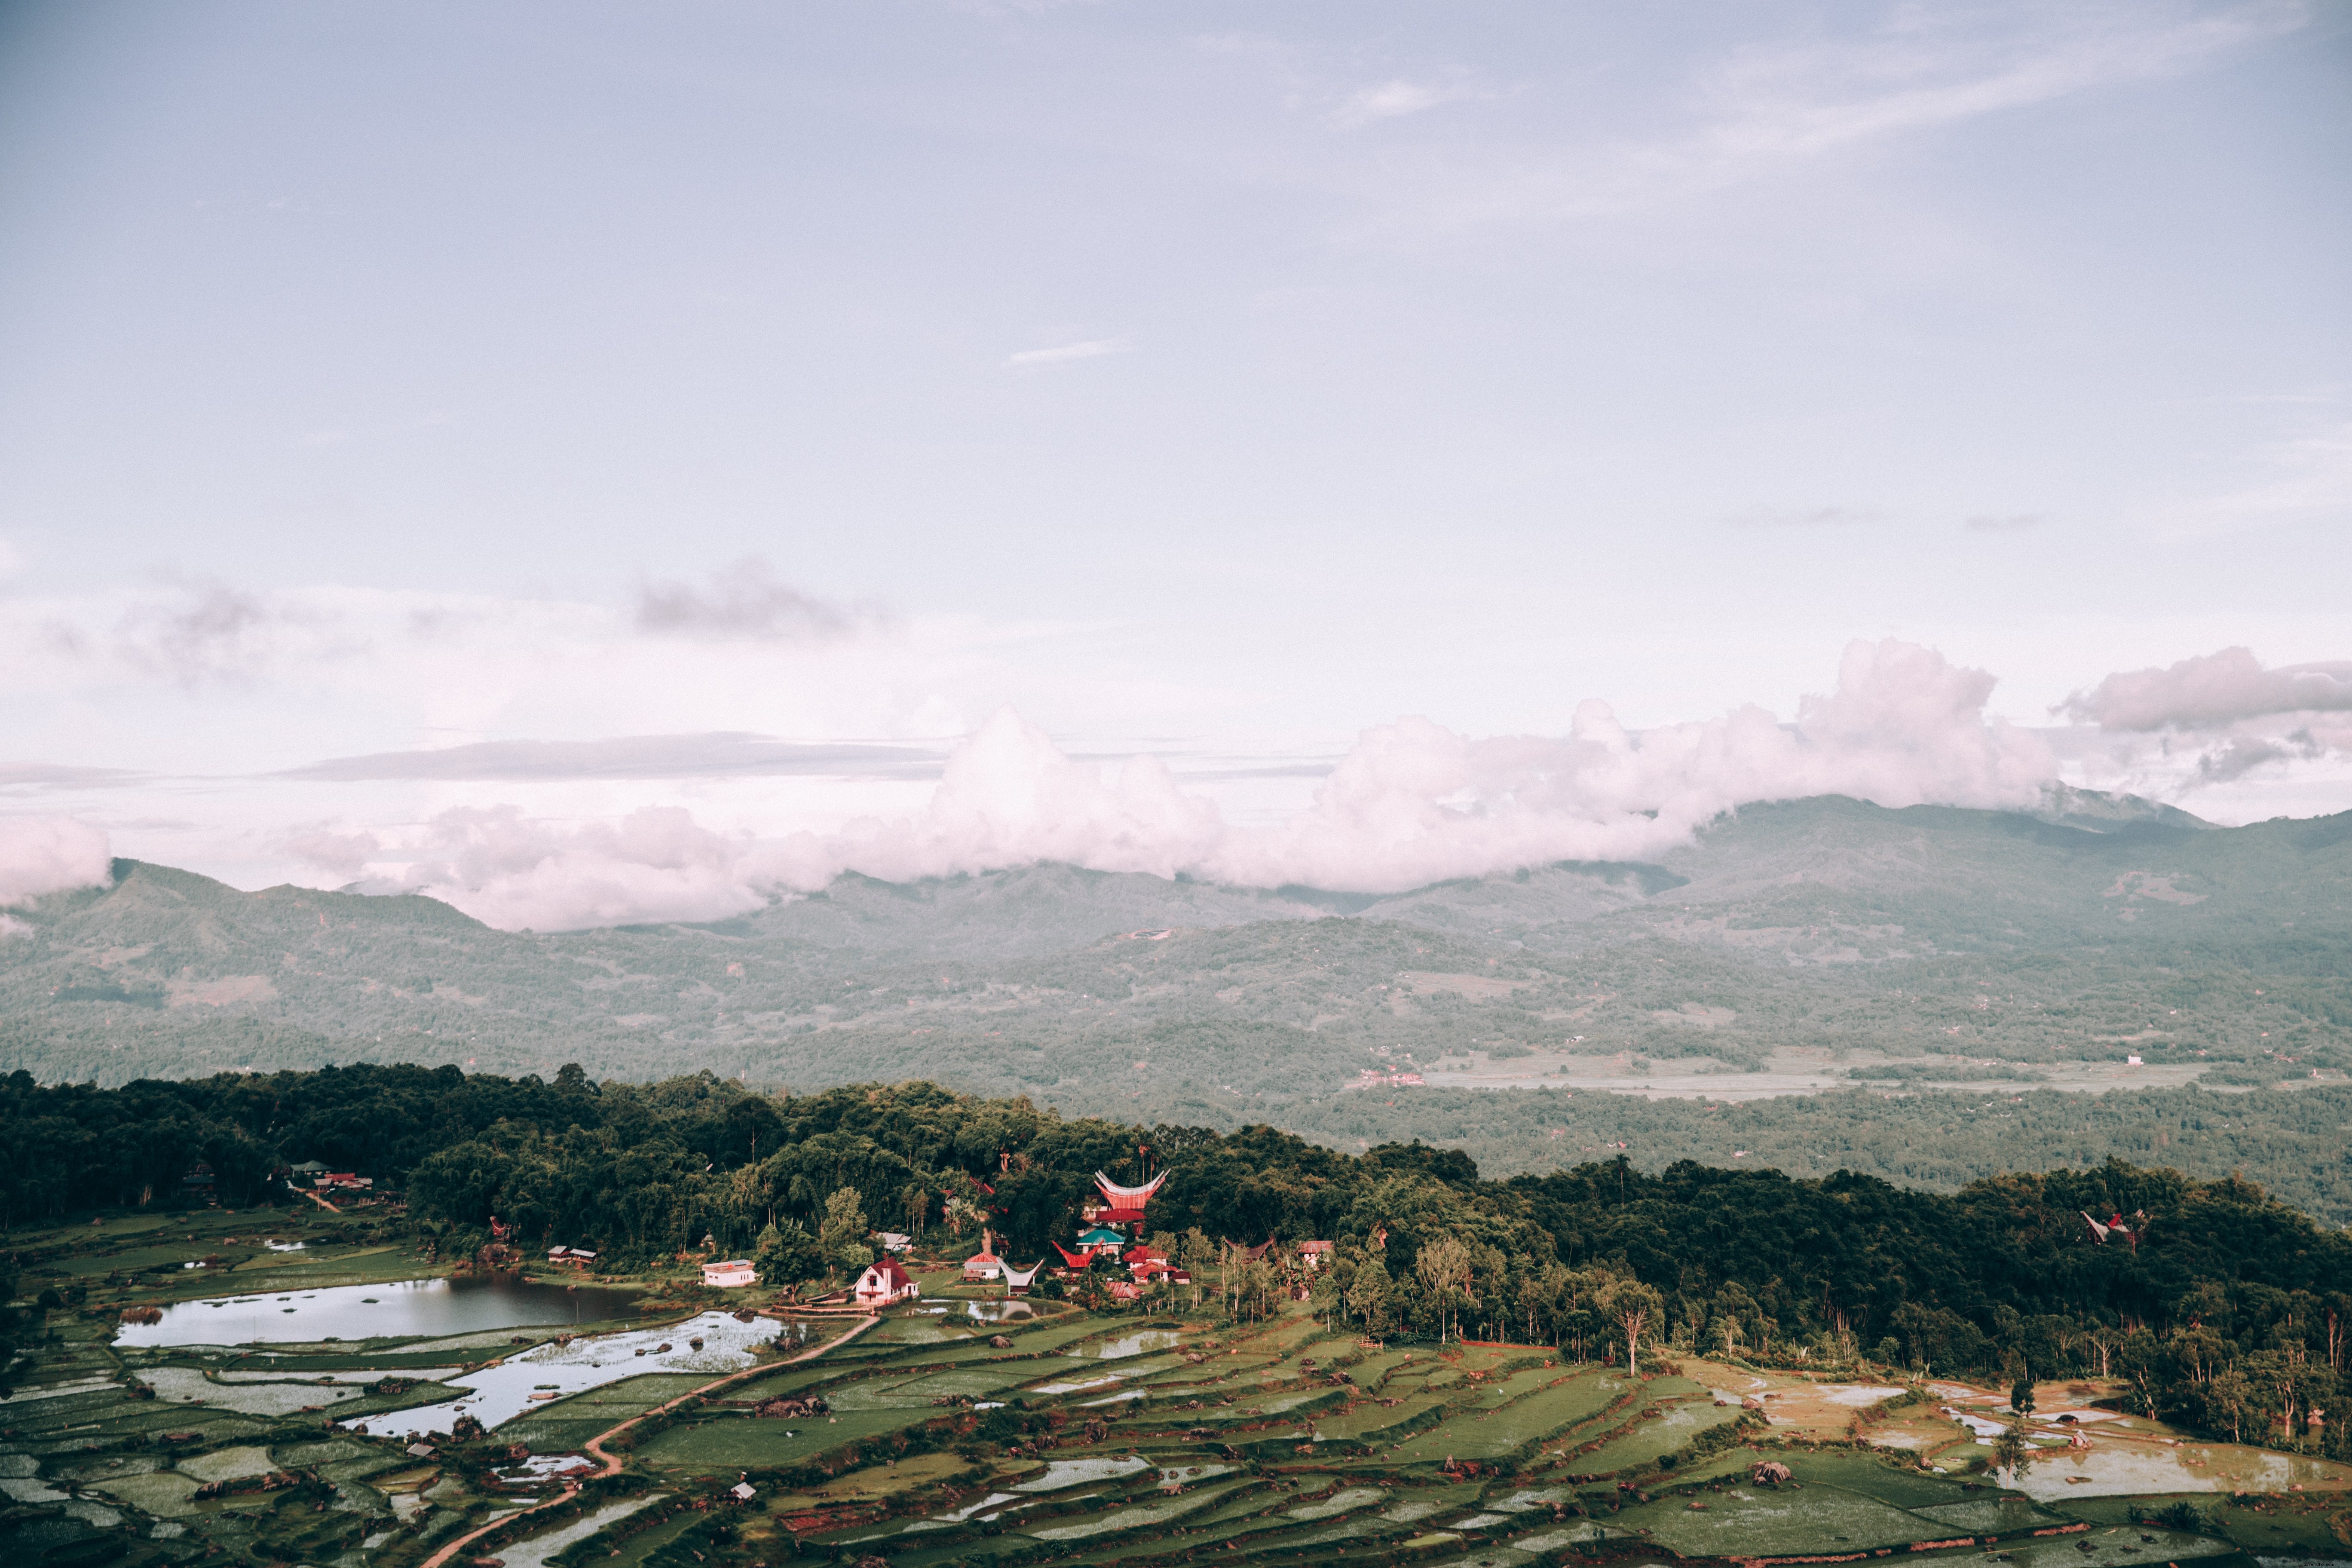 Paisagem indonésia coberta de arrozais e fotos do templo 